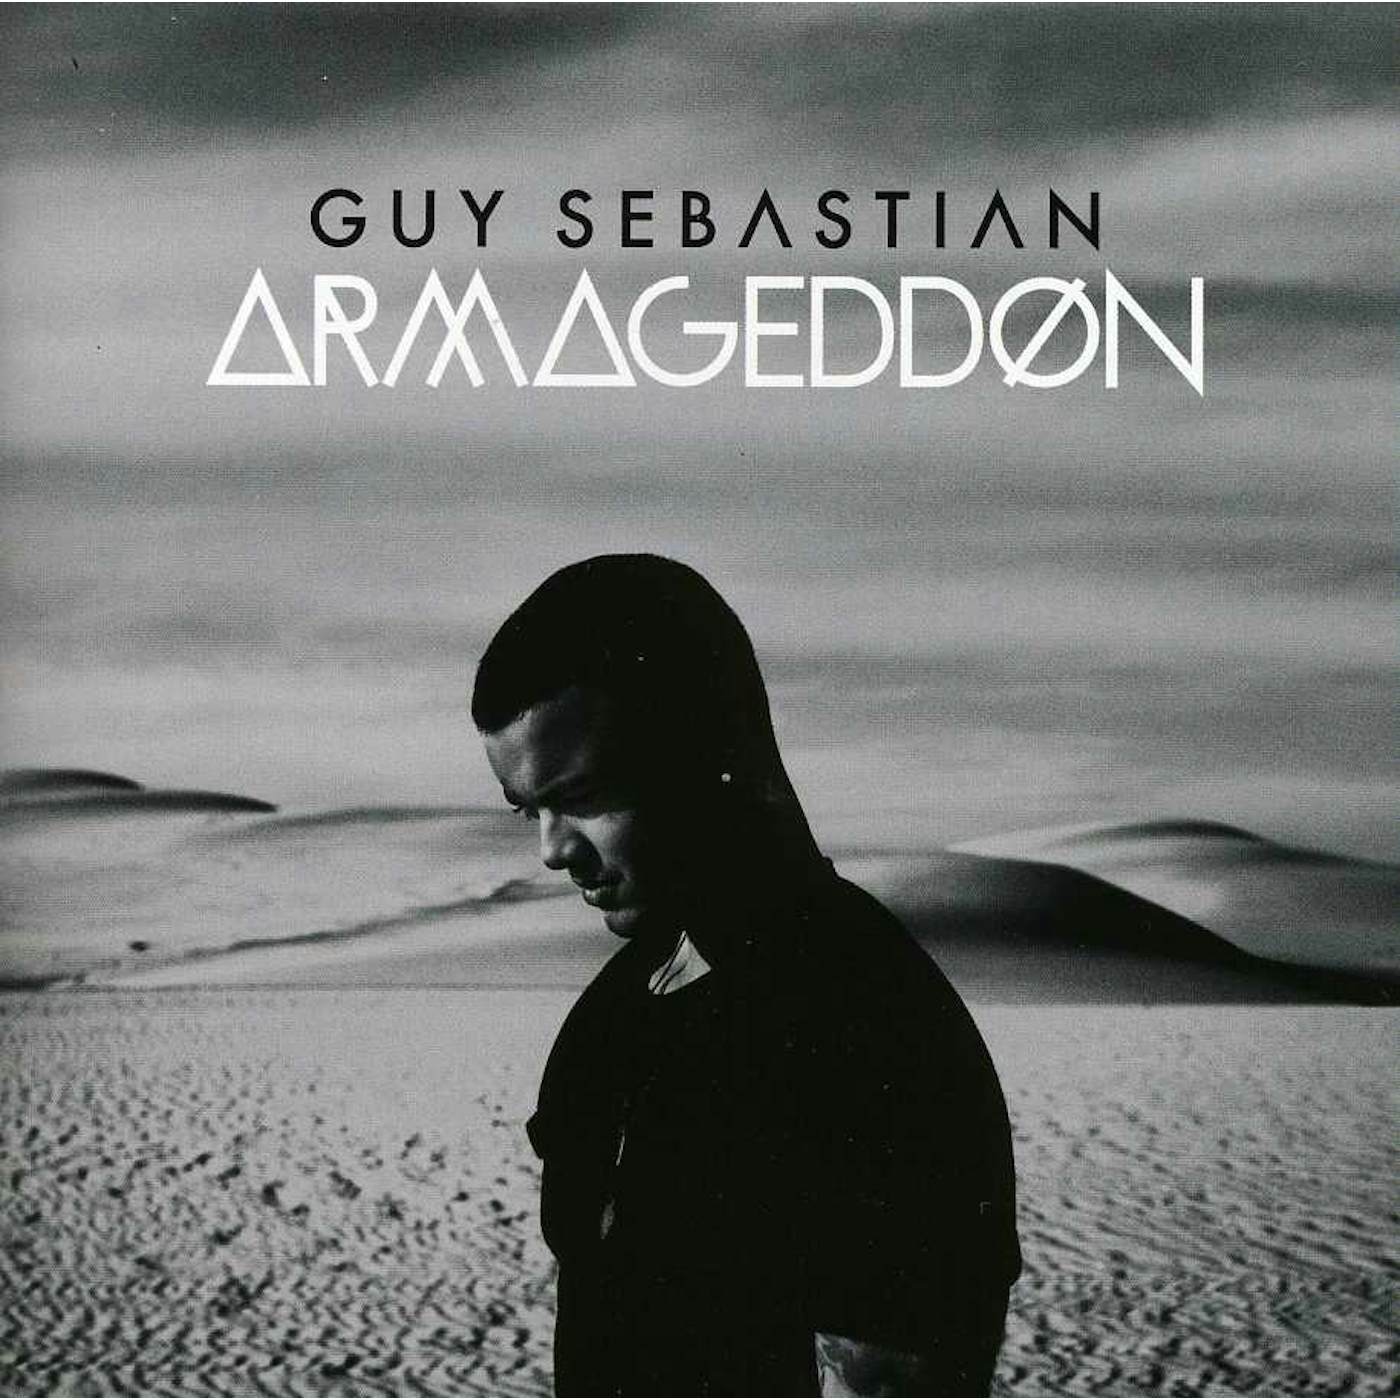 Guy Sebastian ARMAGEDDON CD